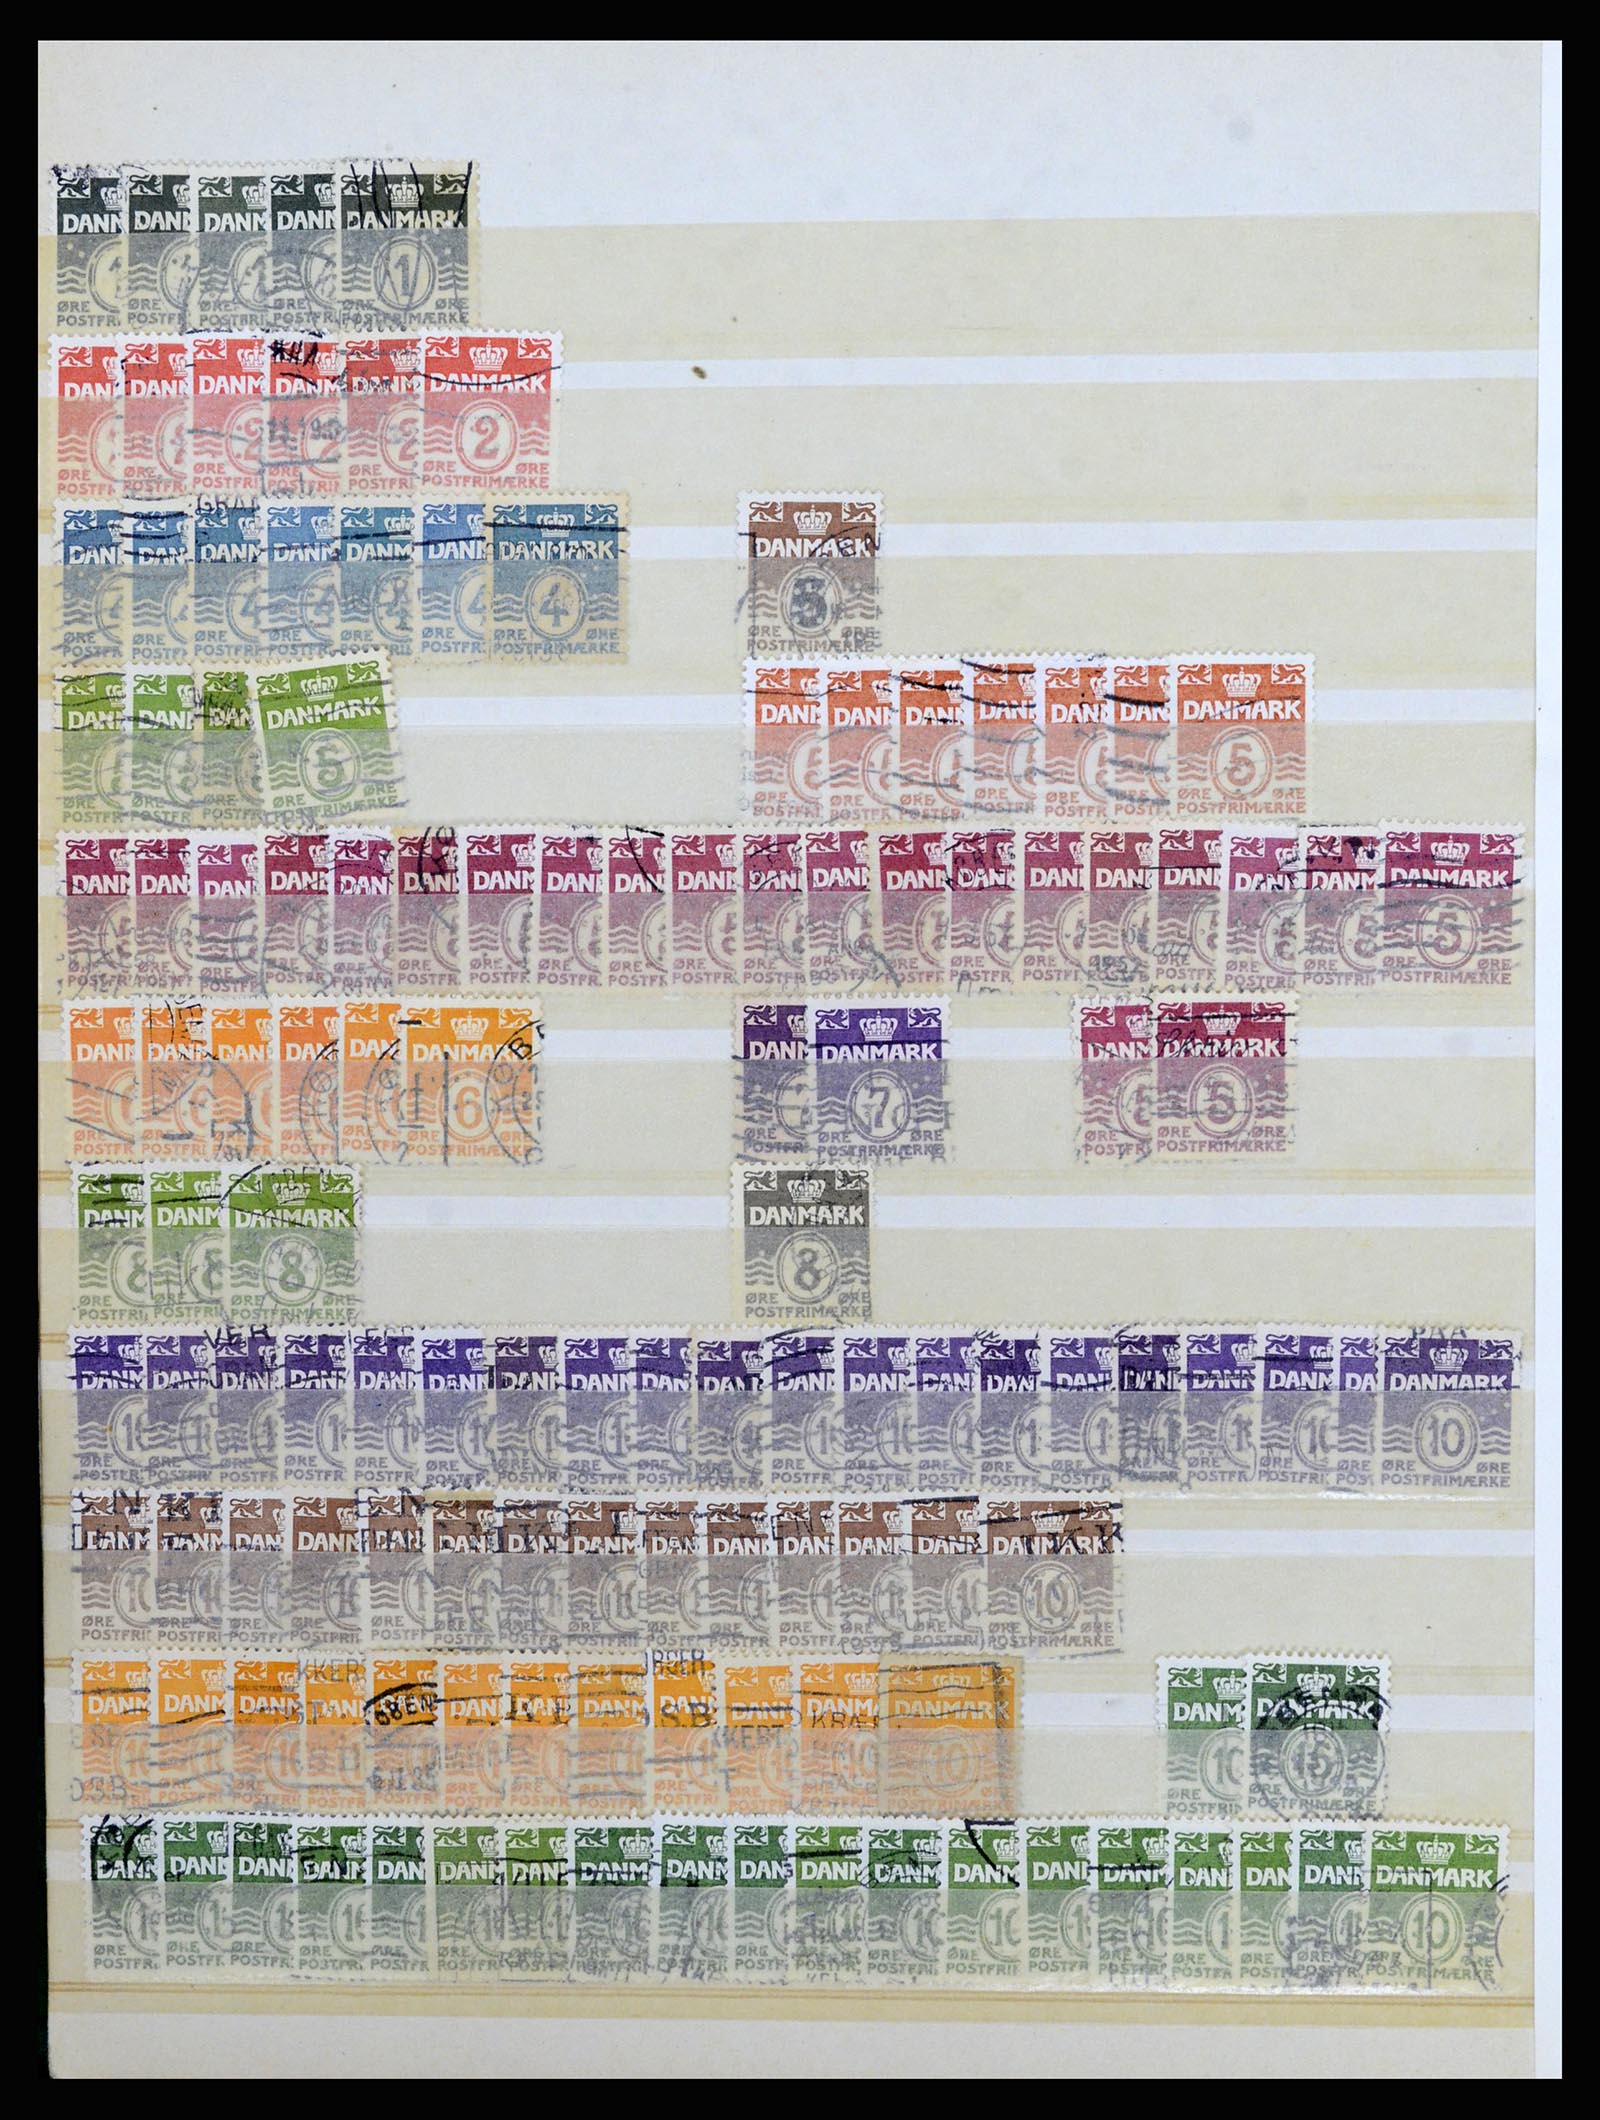 37056 029 - Postzegelverzameling 37056 Denemarken perfins.